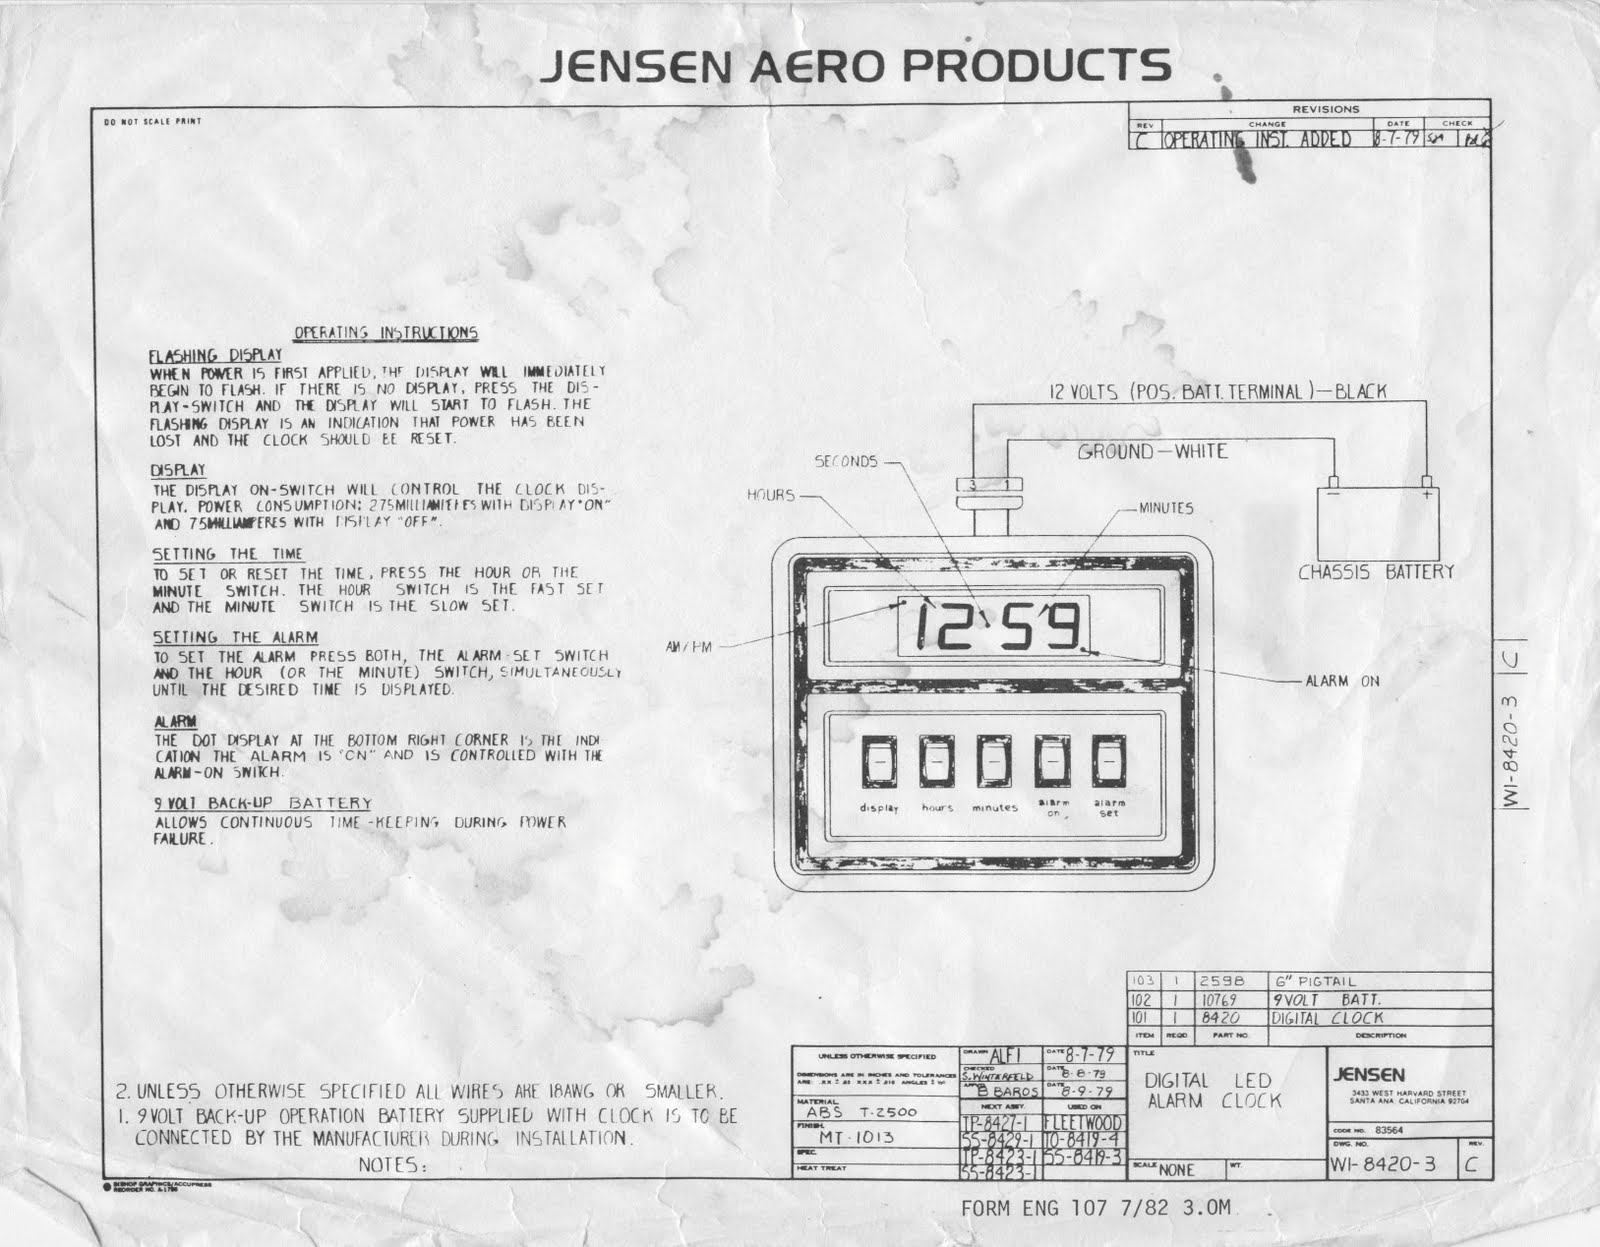 1983 Fleetwood Pace Arrow Owners Manuals: Digital alarm clock instructions